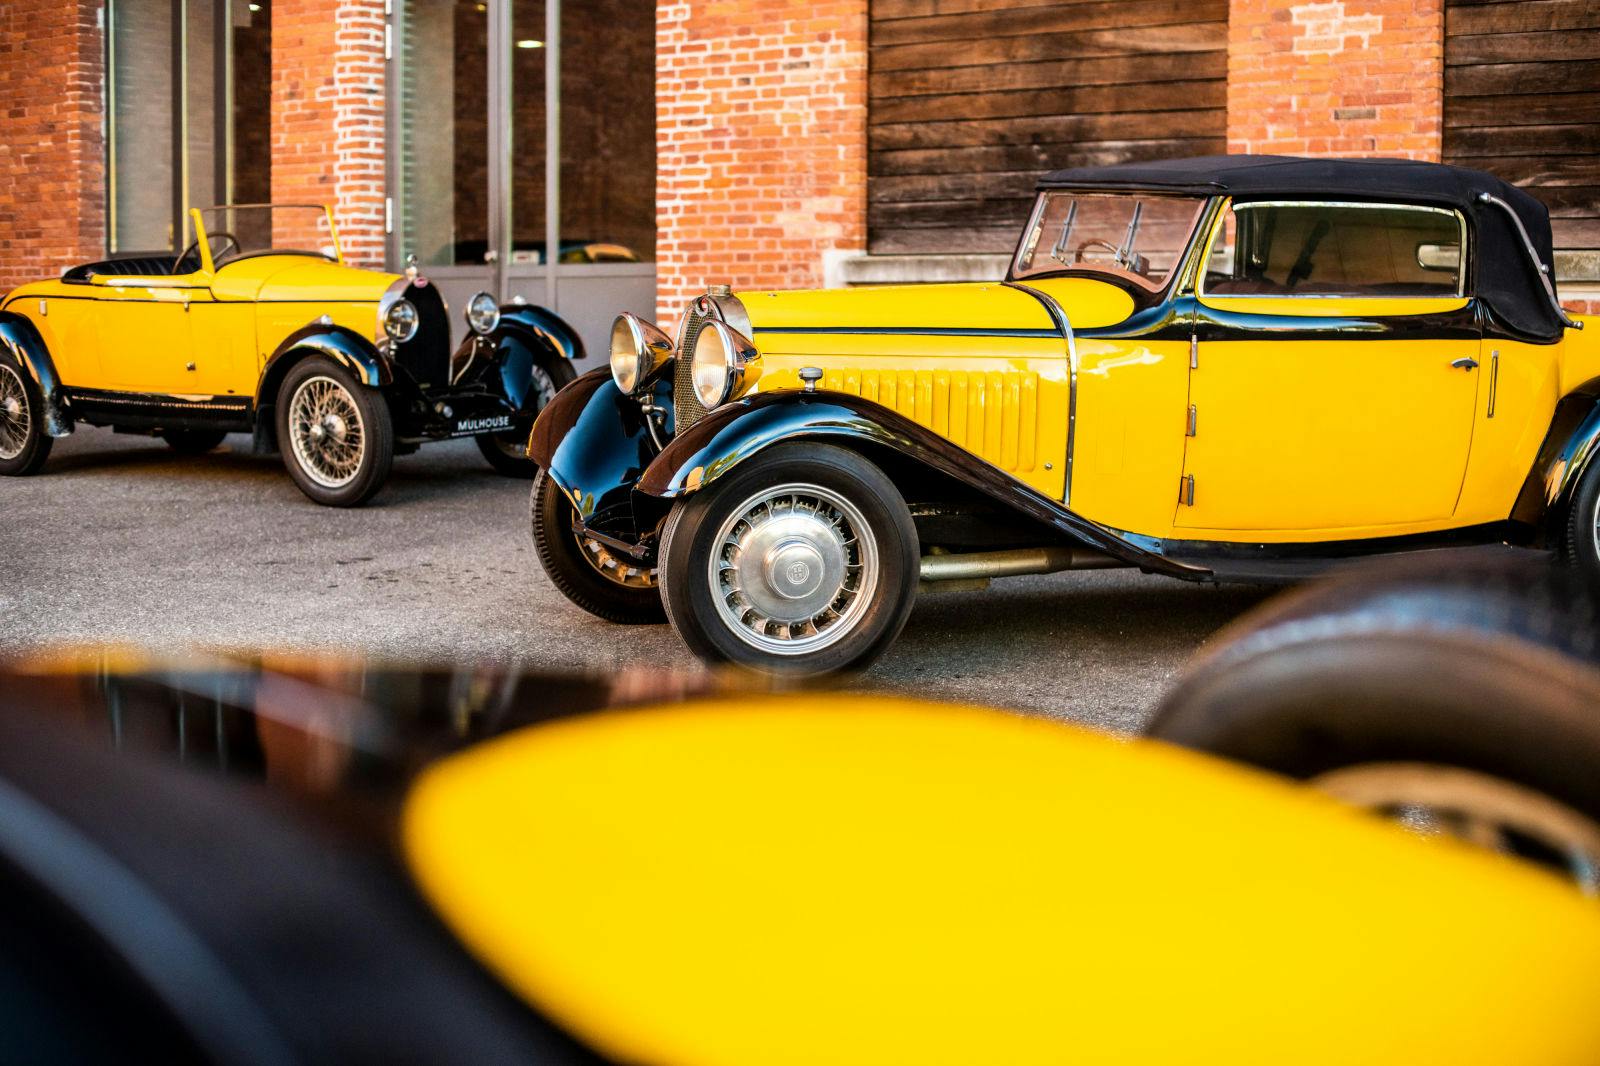 Les couleurs préférées d’Ettore Bugatti : le noir et le jaune.